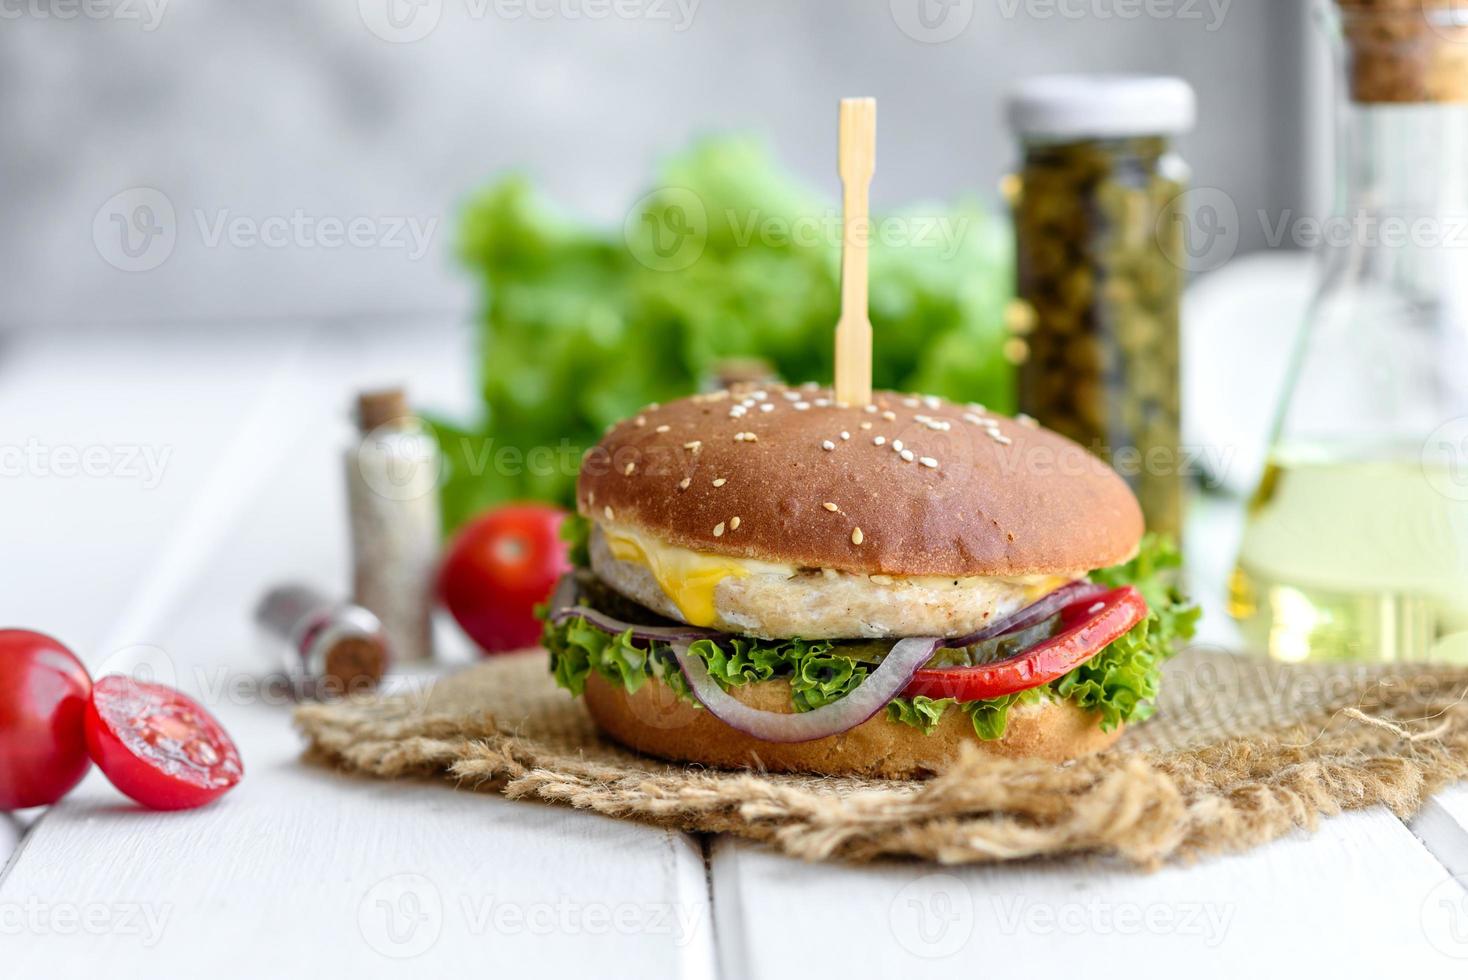 délicieux hamburger fait maison frais sur une table en bois photo